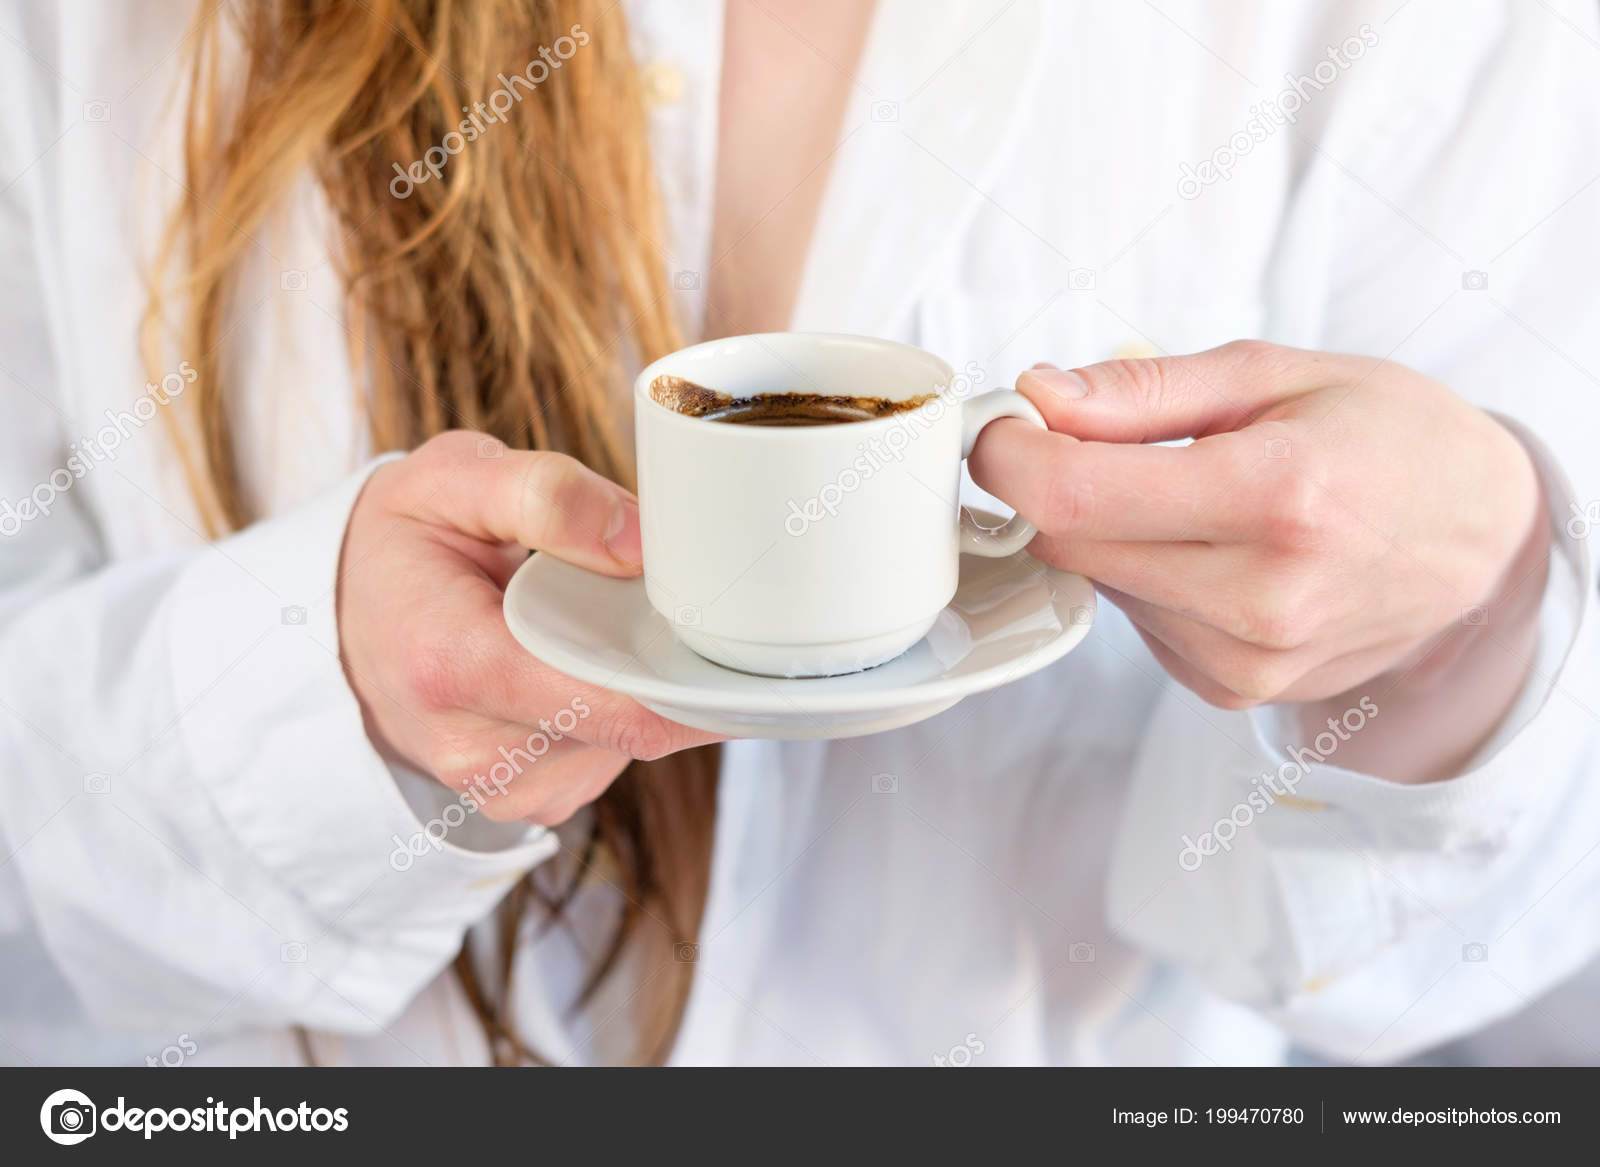 Девушка в белой блузке и без трусиков пьет чай